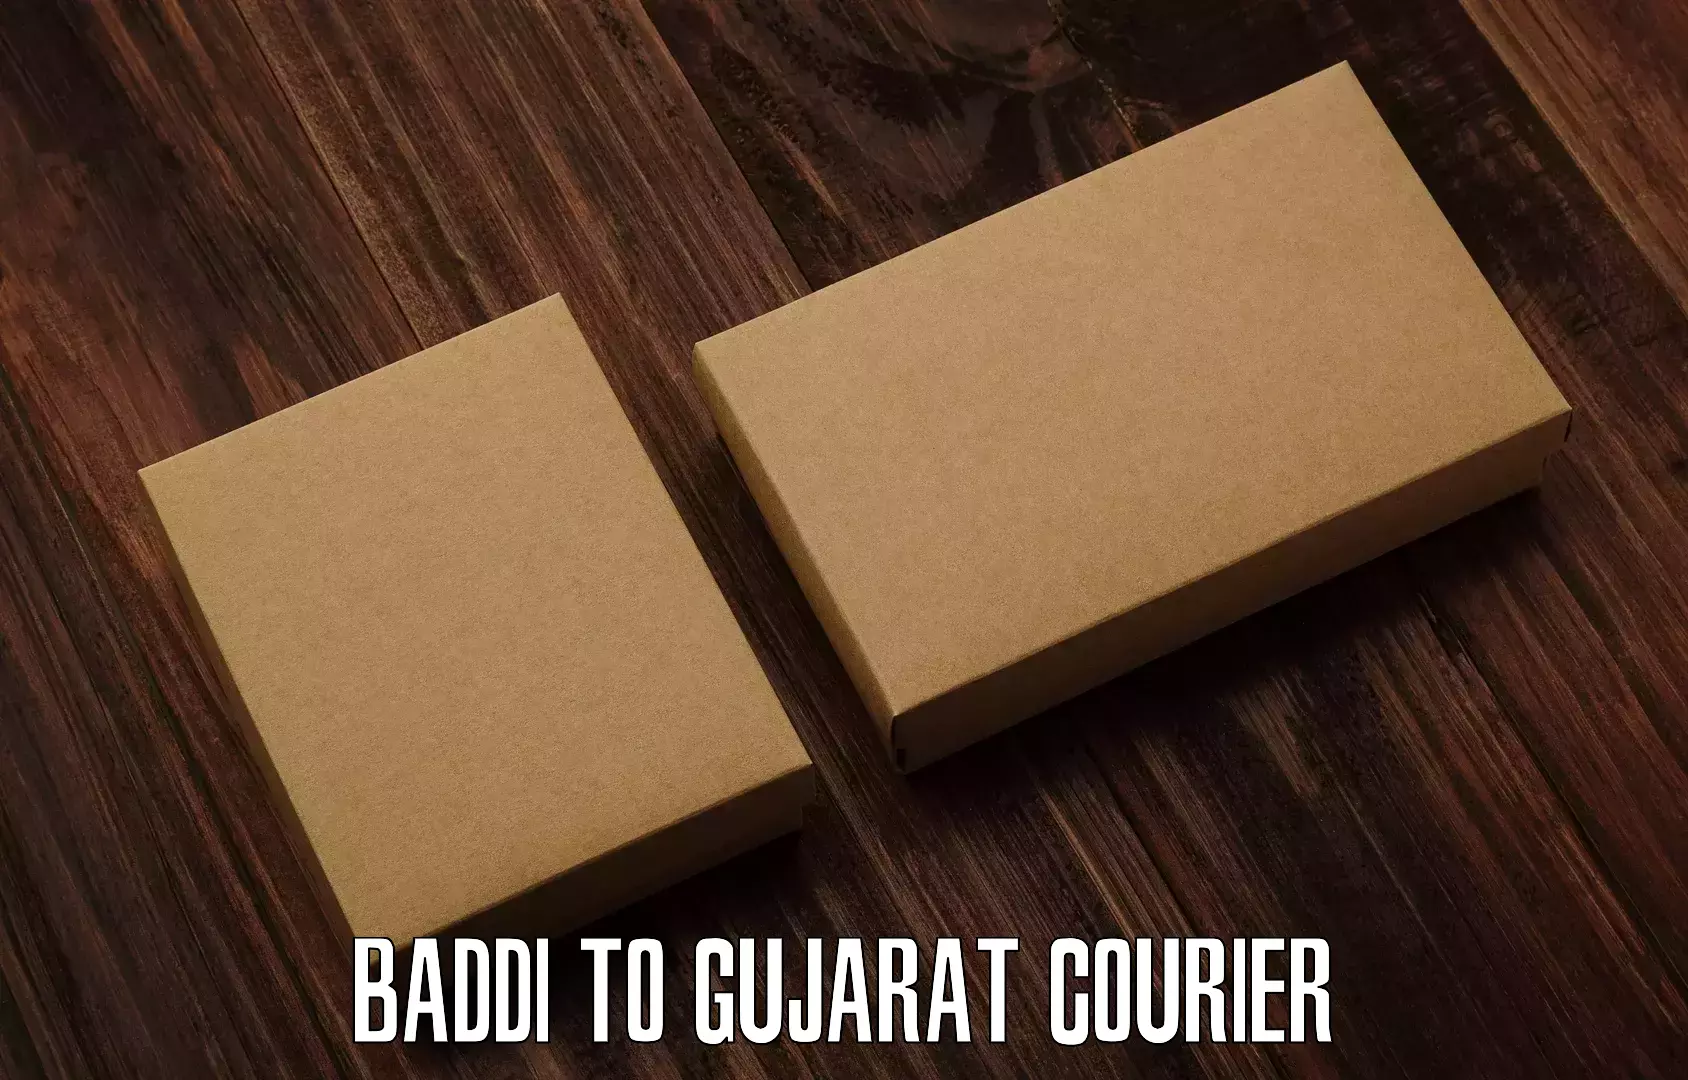 Regular parcel service Baddi to Rajkot